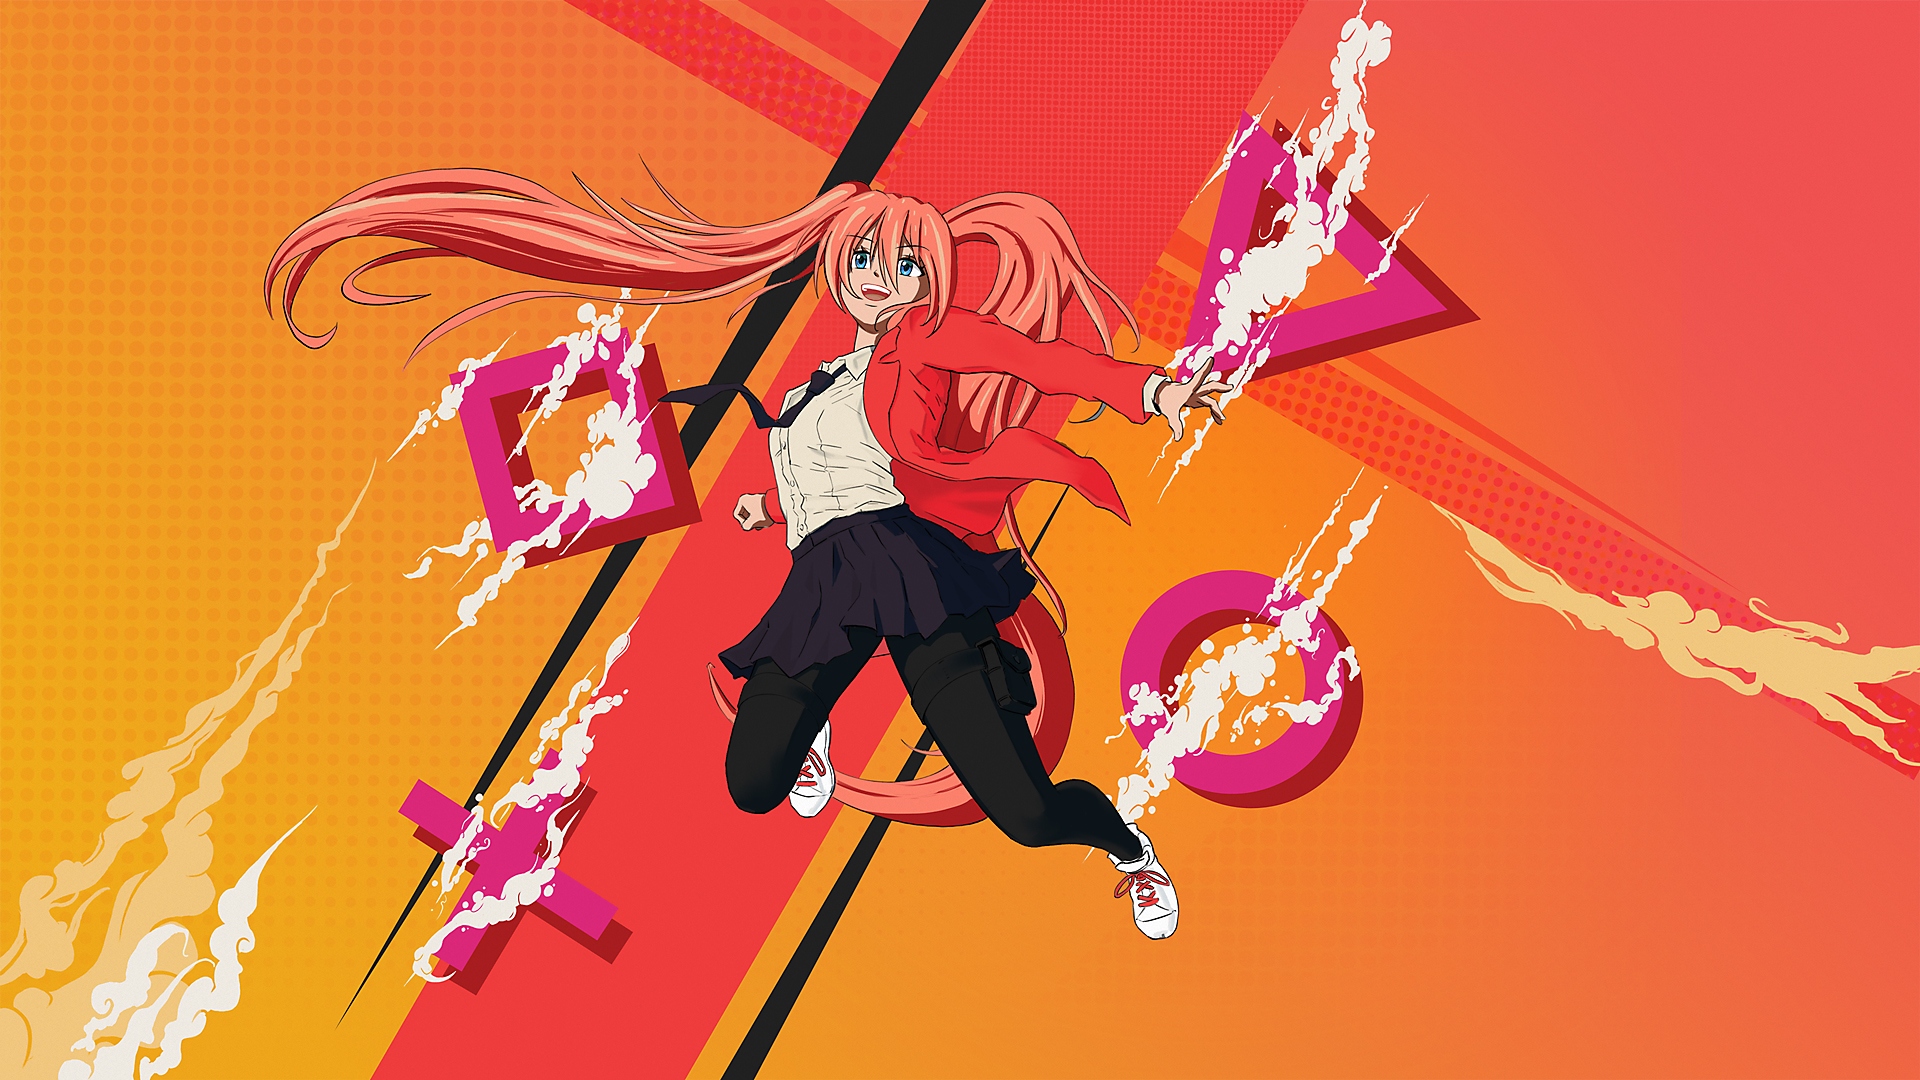 Arte promocional de Los mejores juegos de manga y anime en PS4 y PS5